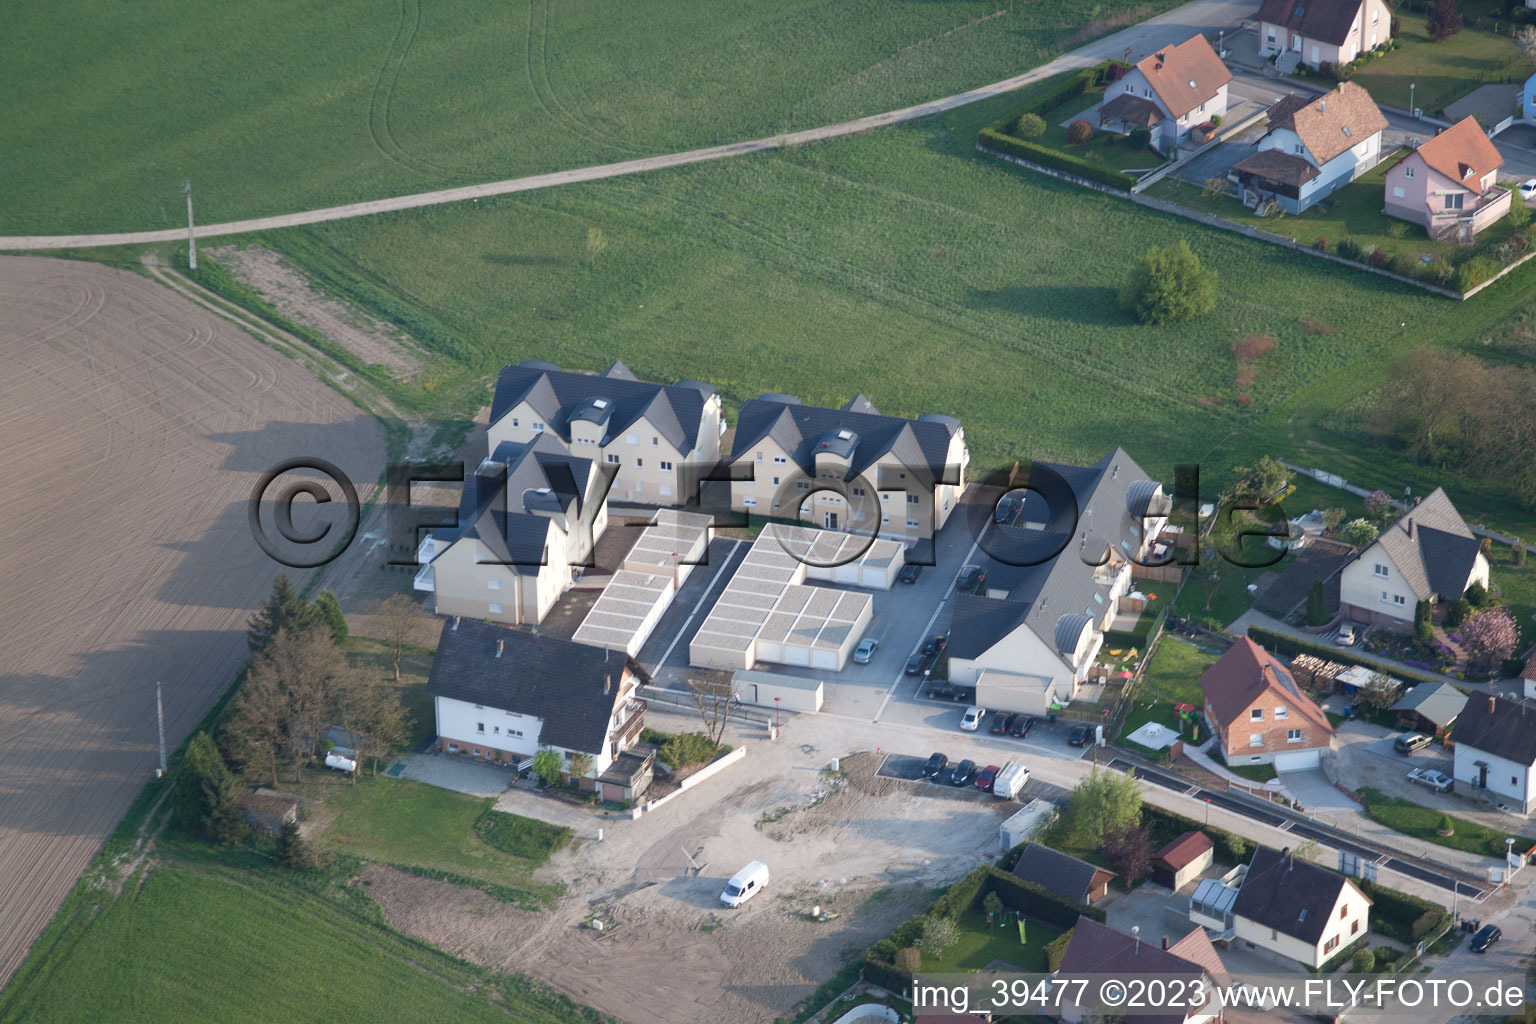 Rœschwoog im Bundesland Bas-Rhin, Frankreich aus der Luft betrachtet